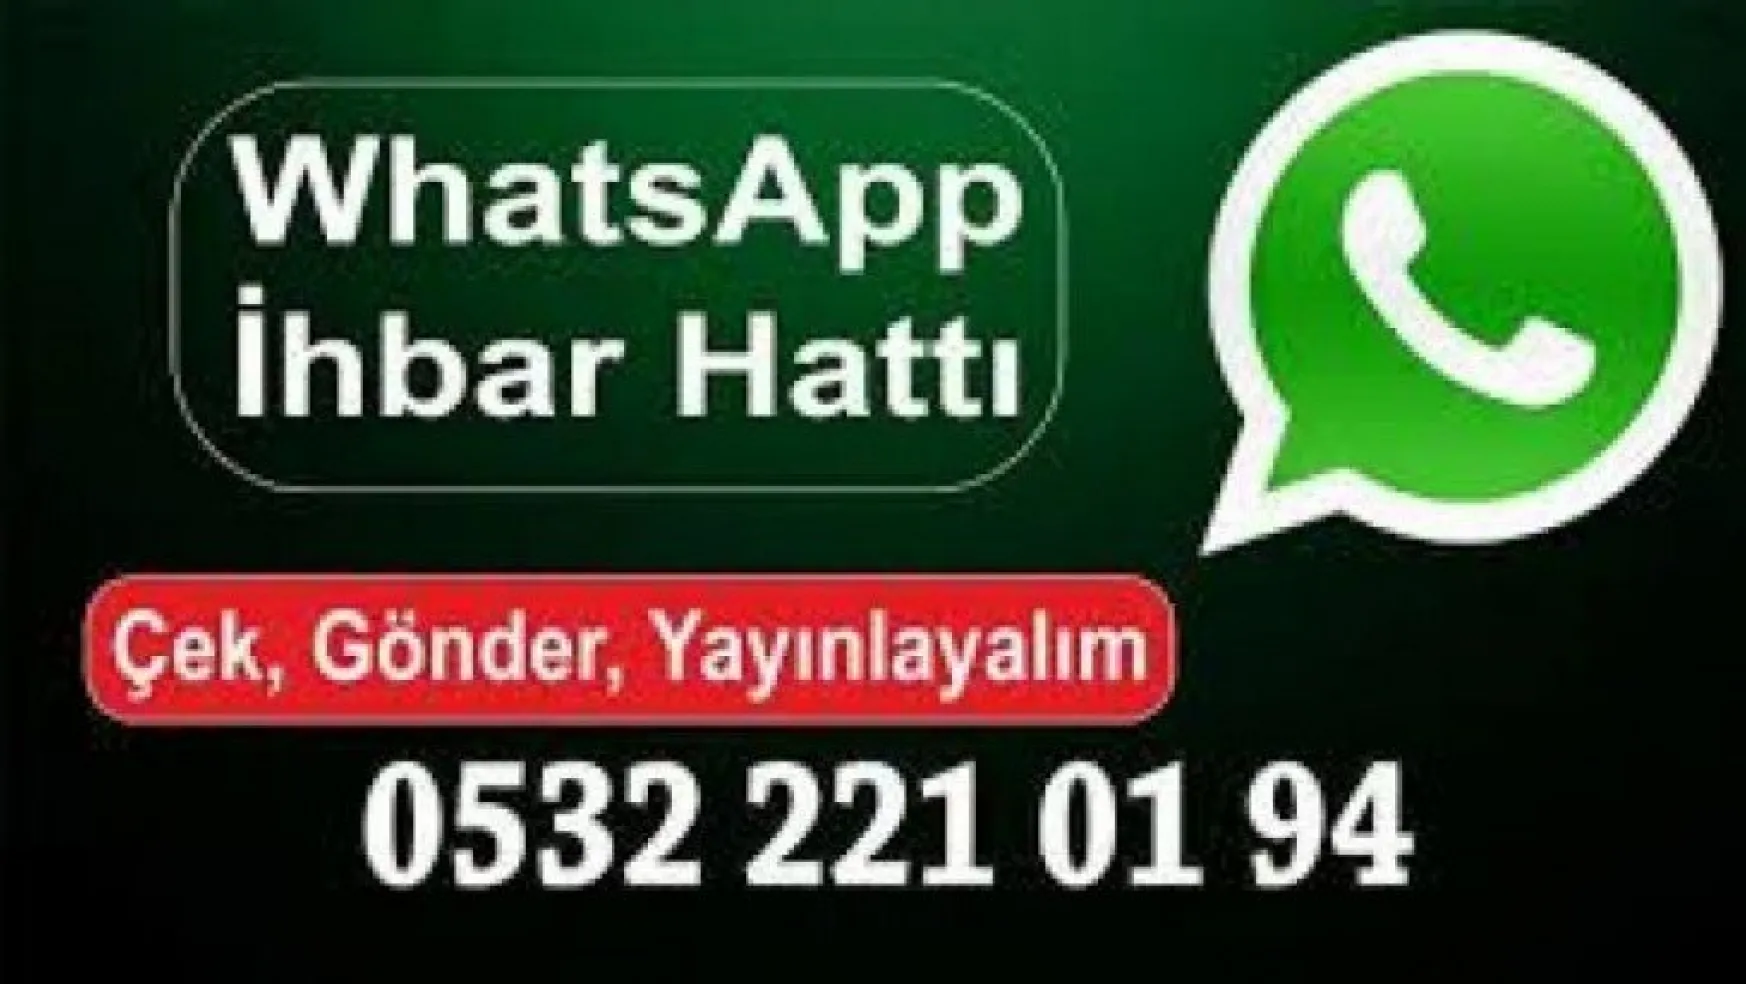 Whatsapp İhbar Hattımız